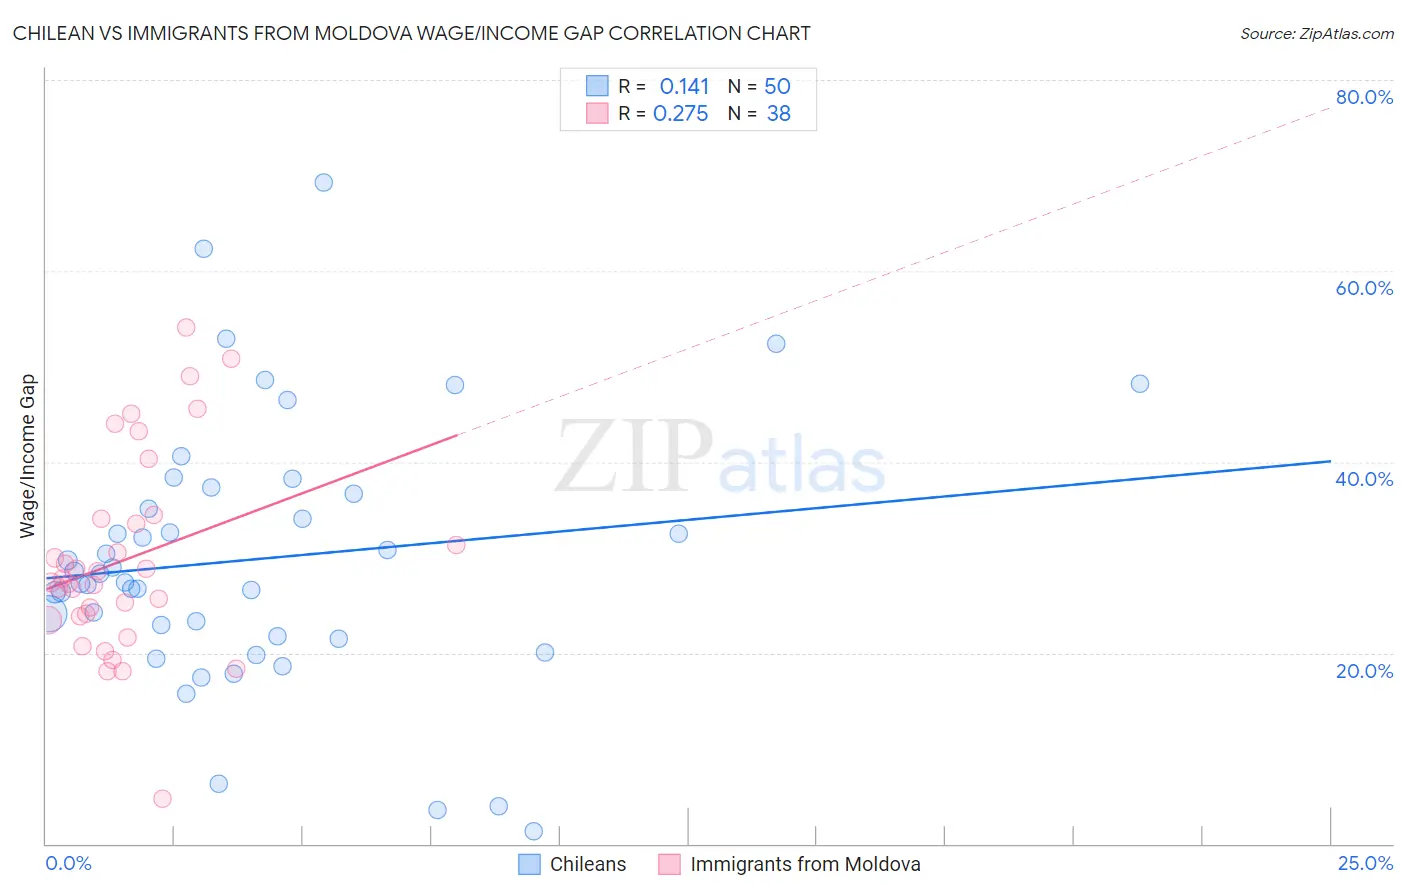 Chilean vs Immigrants from Moldova Wage/Income Gap